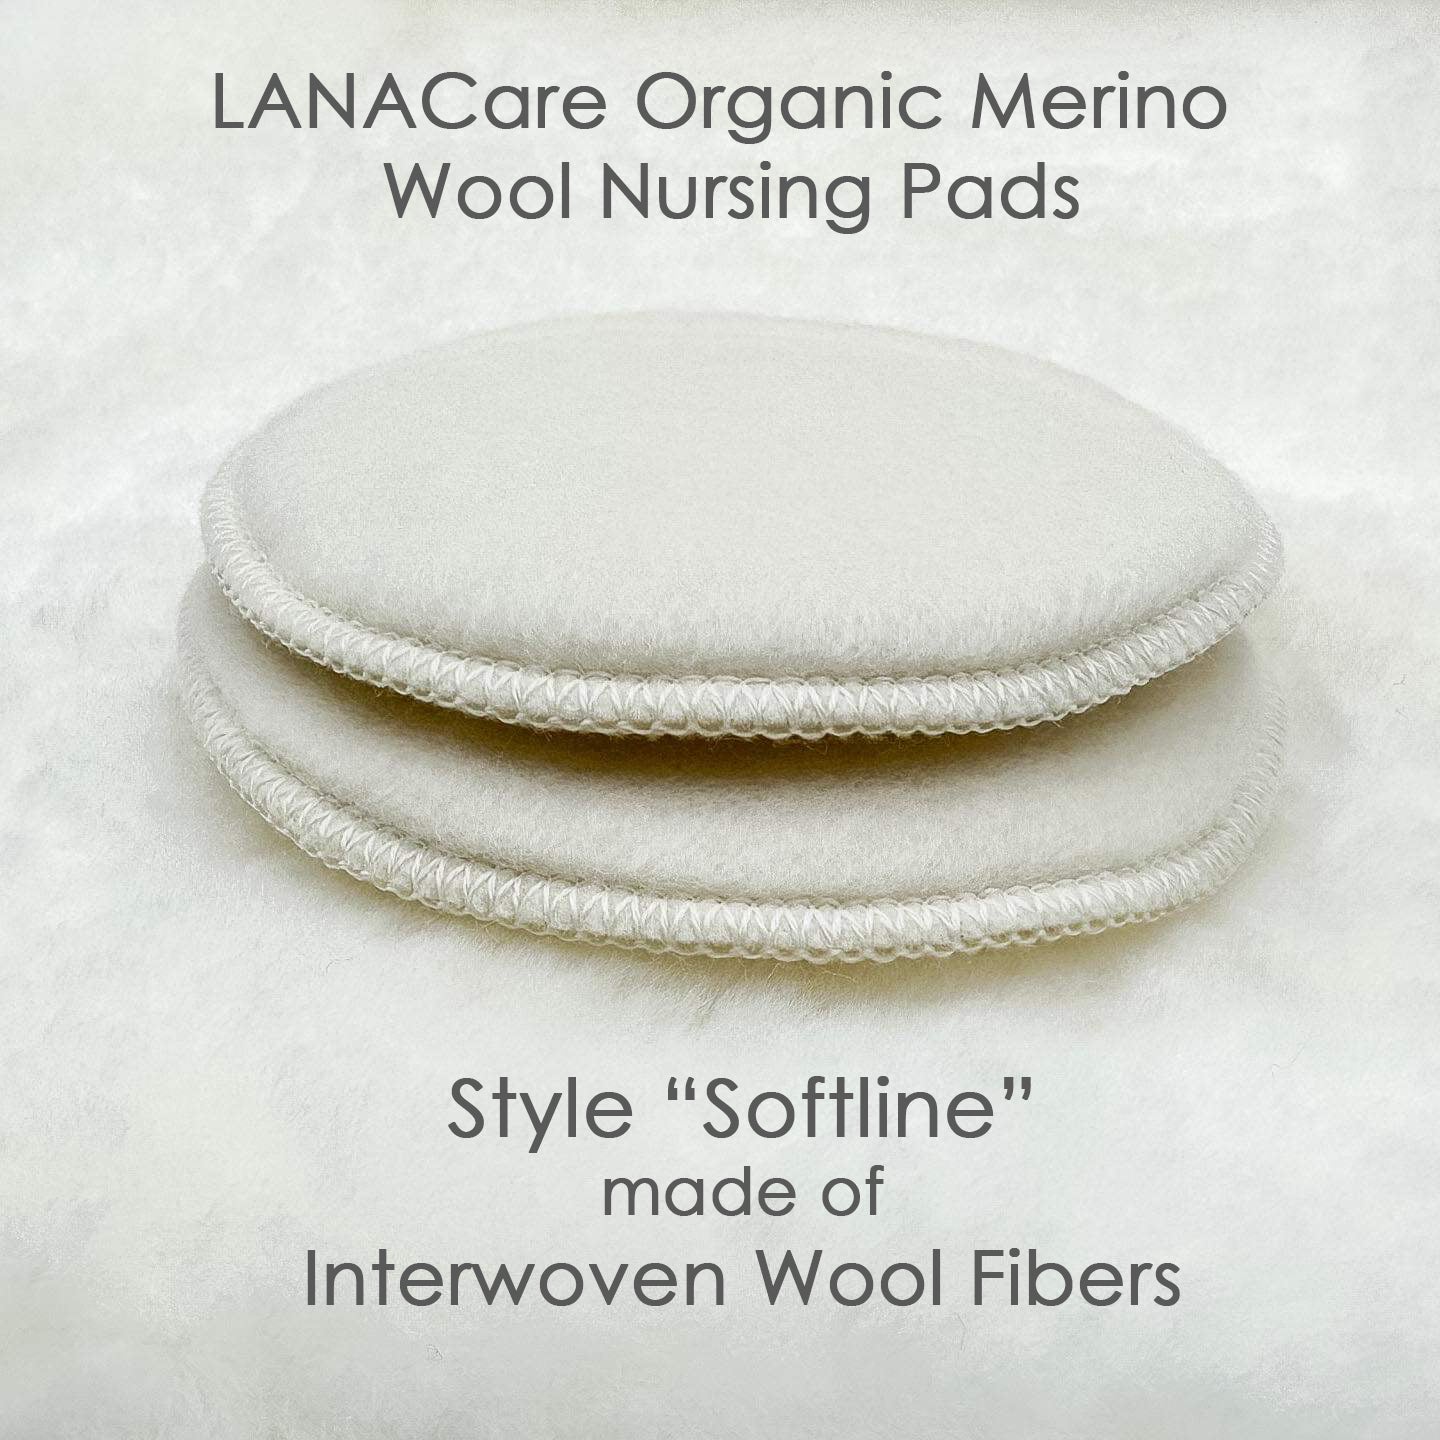 Lanacare Organic Merino Wool Nursing Pads, Original